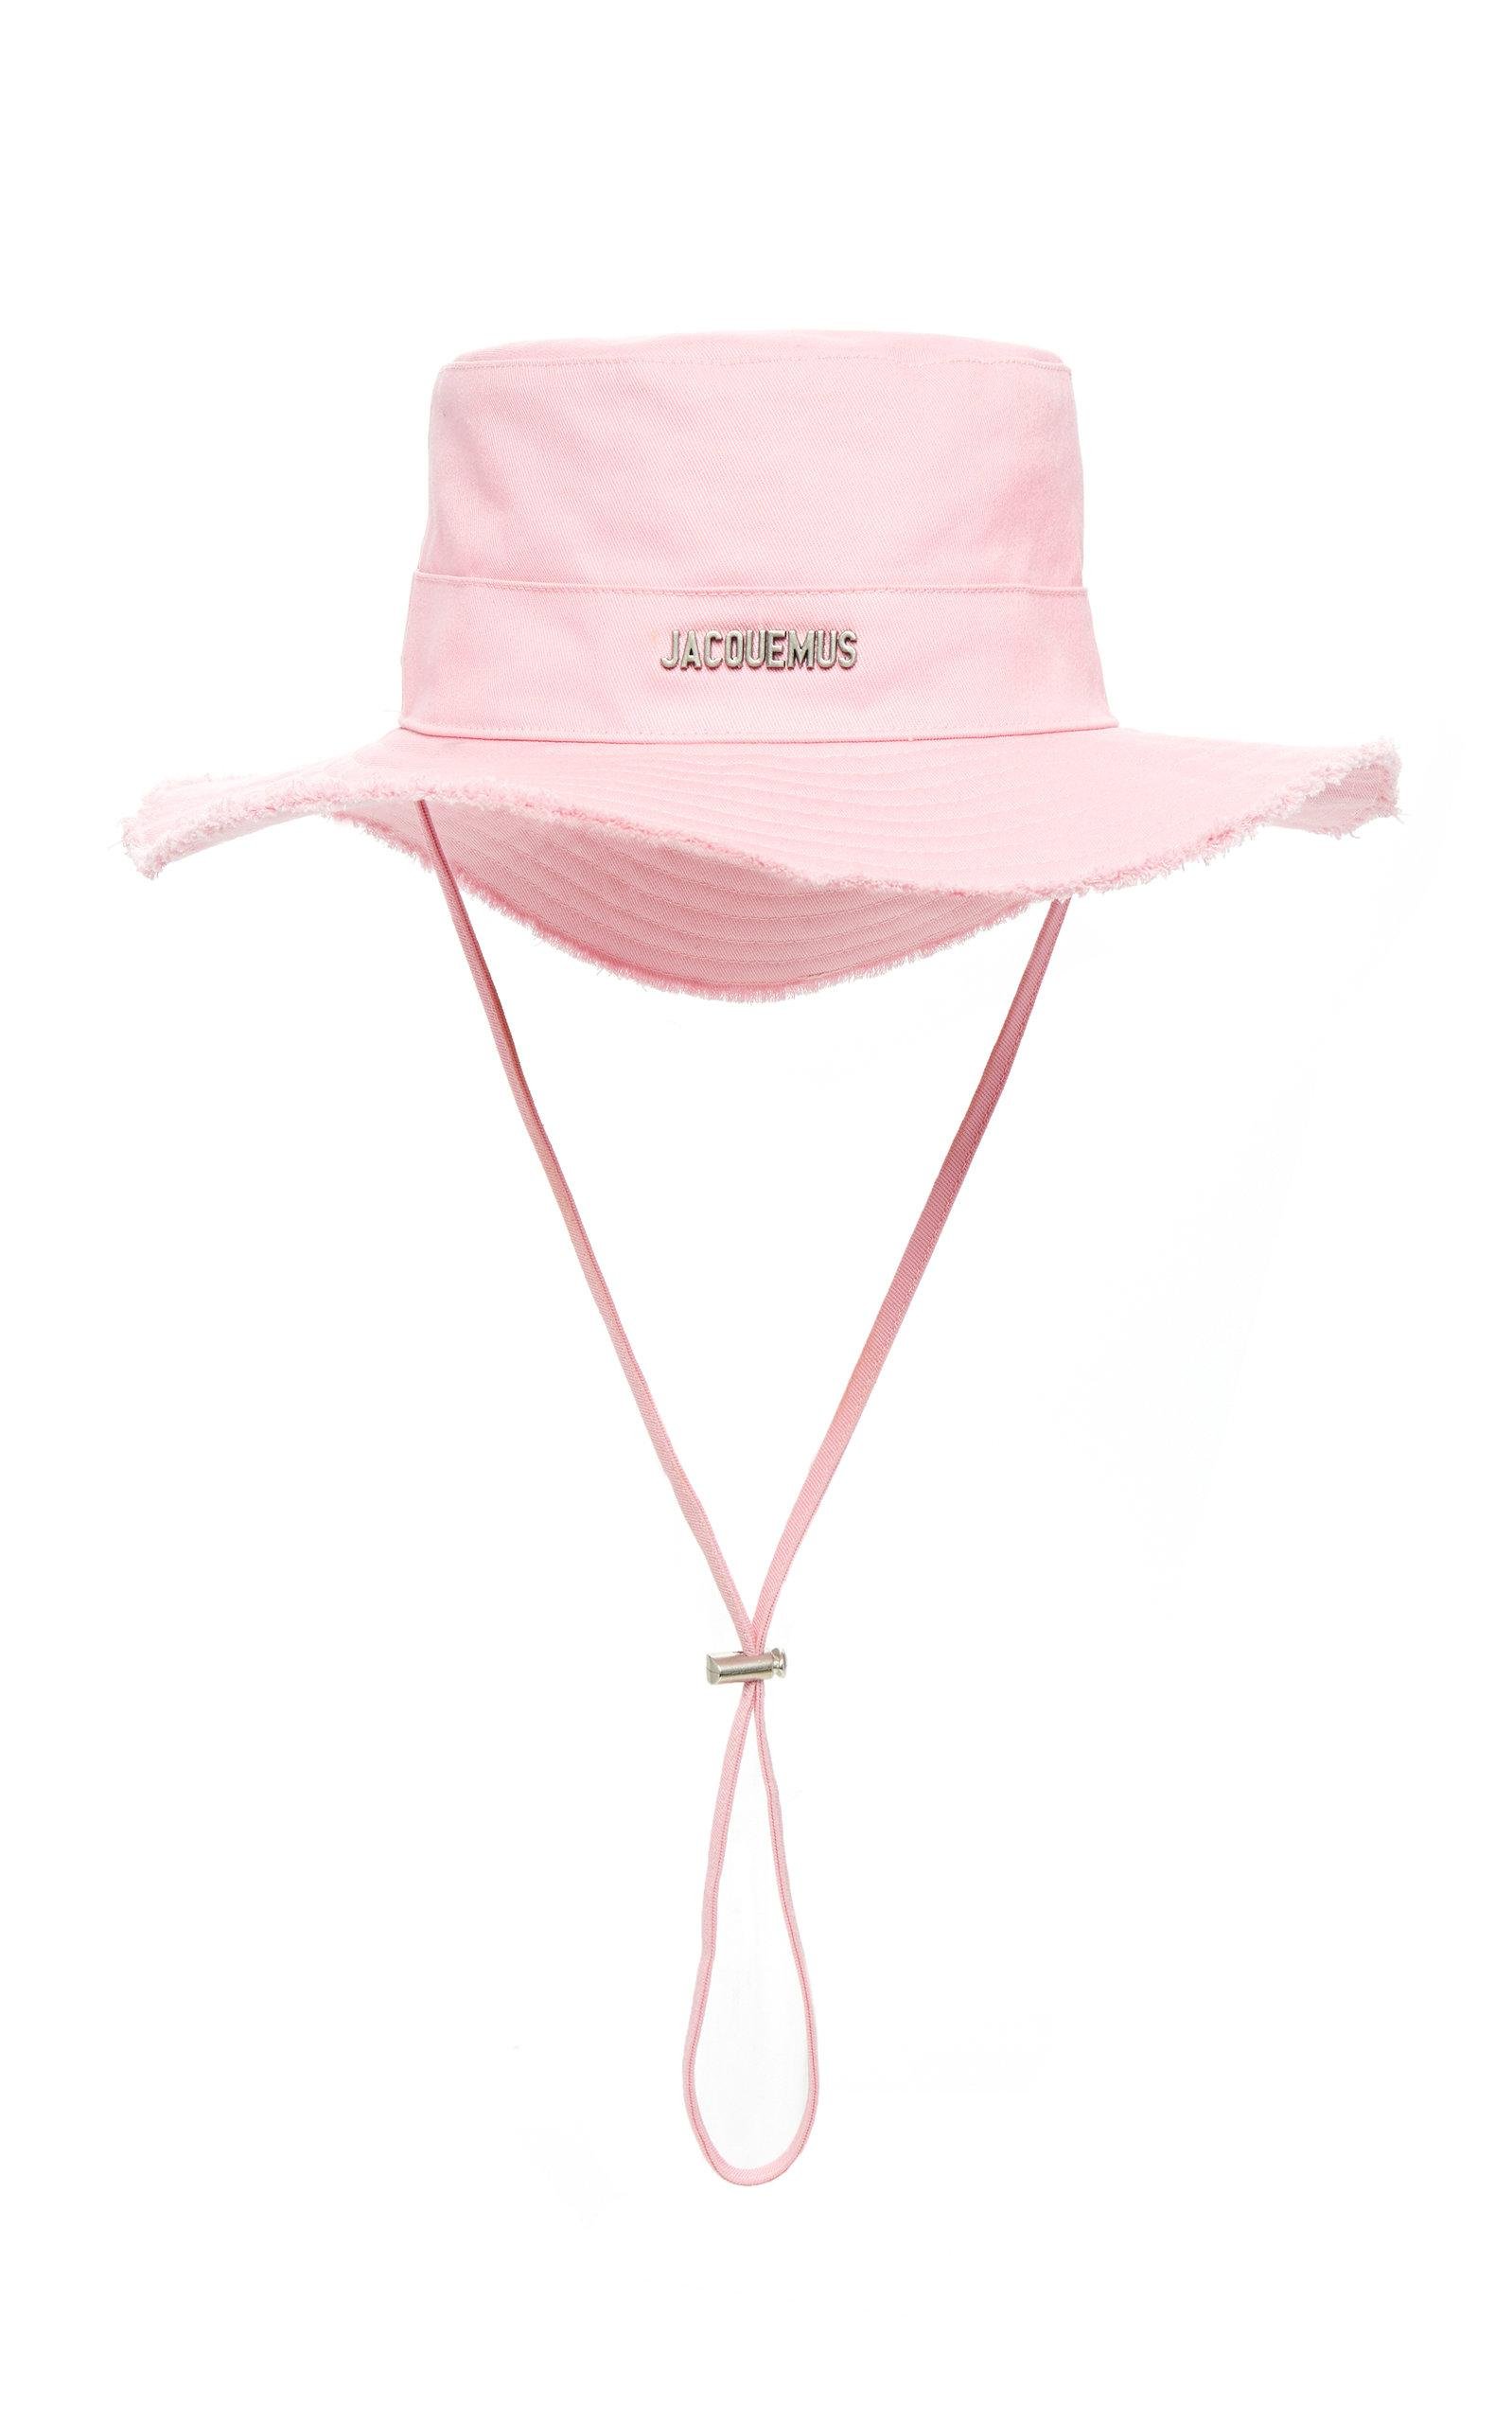 Jacquemus Le bob Artichaut Hat in Light Pink.jpeg